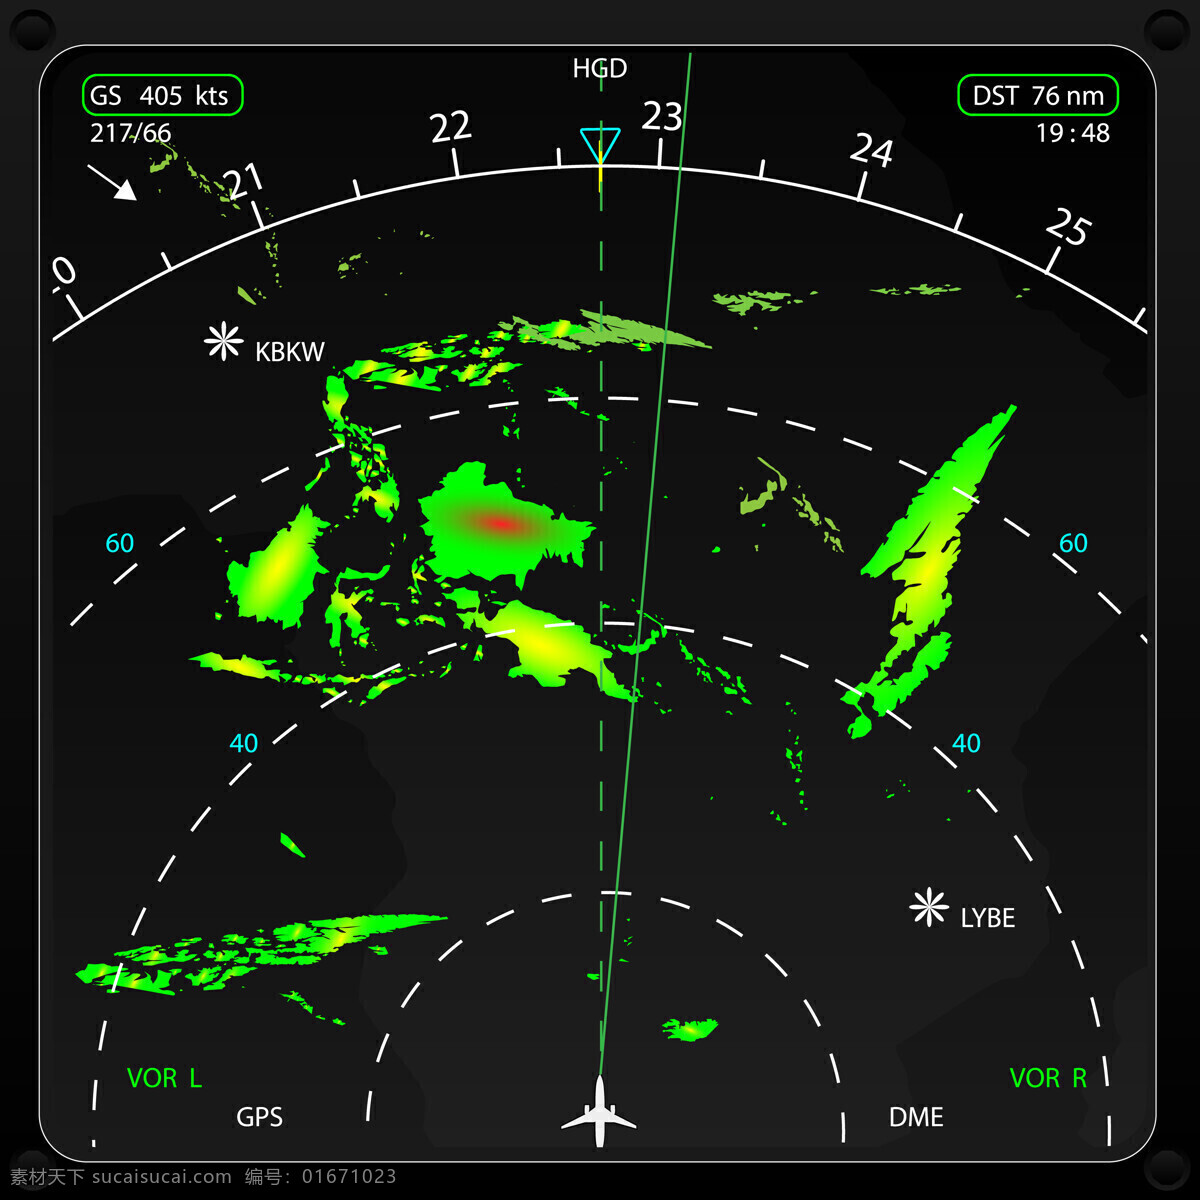 飞机 雷达 飞机驾驶室 飞机雷达 机长室 驾驶室摄影 飞机图片 现代科技